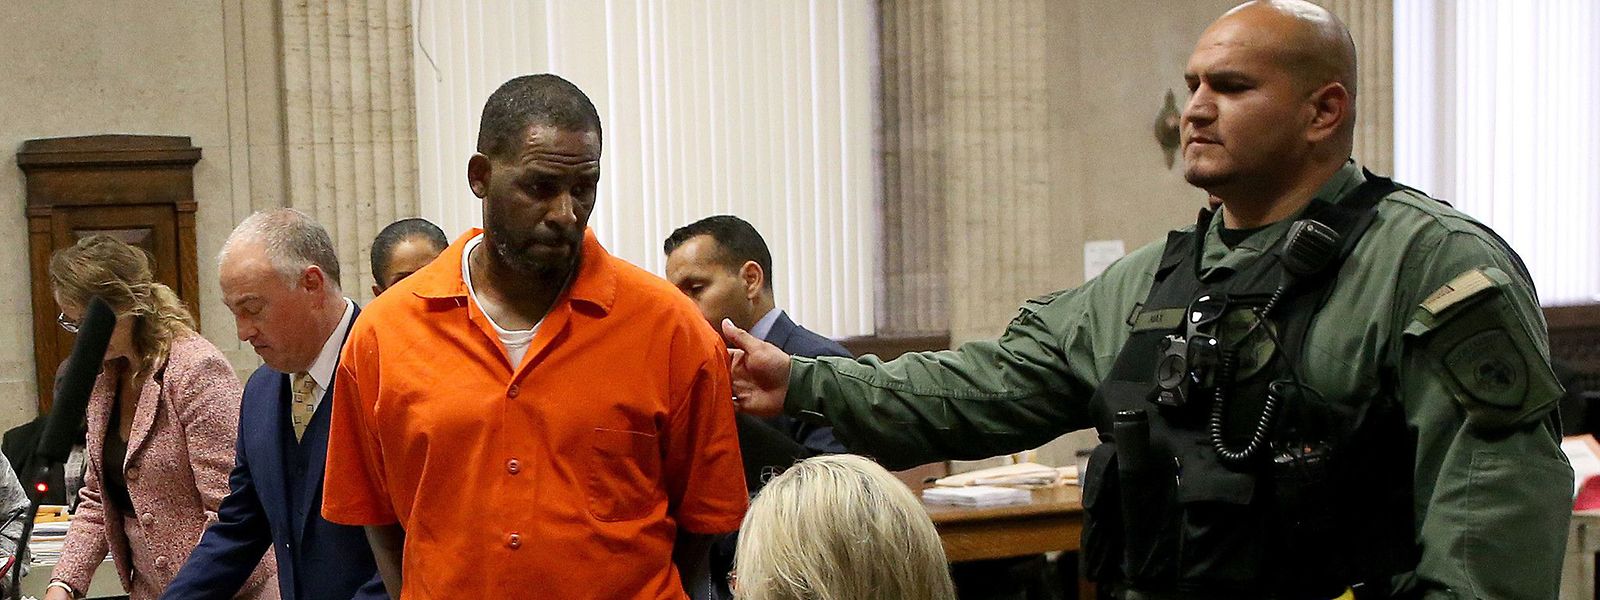 O músico R. Kelly de fato prisional laranja numa sessão em tribunal.